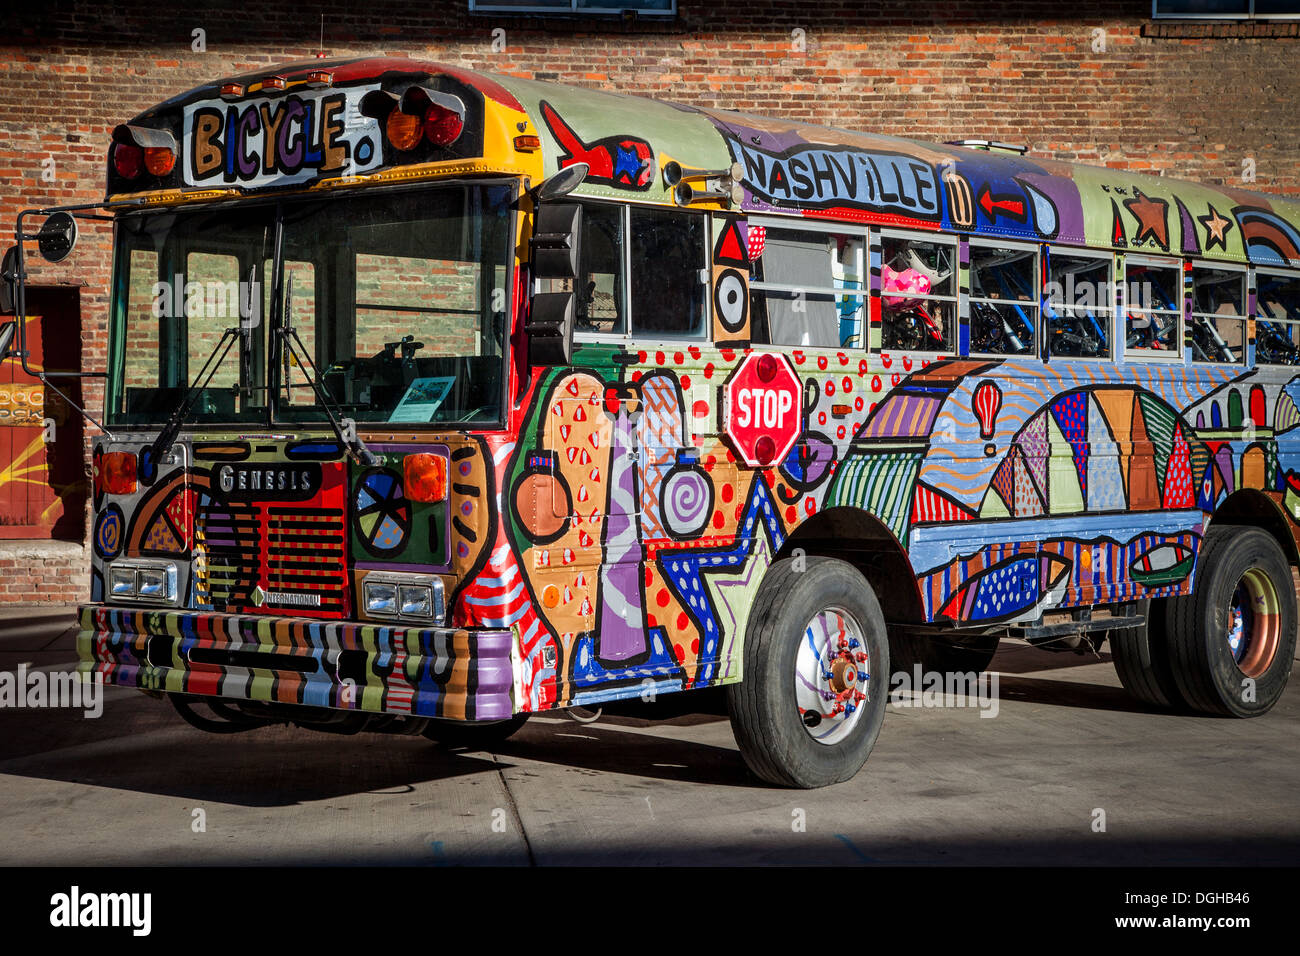 La location de bus - un art et vert-vivant projet communautaire à Nashville, Tennessee, USA Banque D'Images